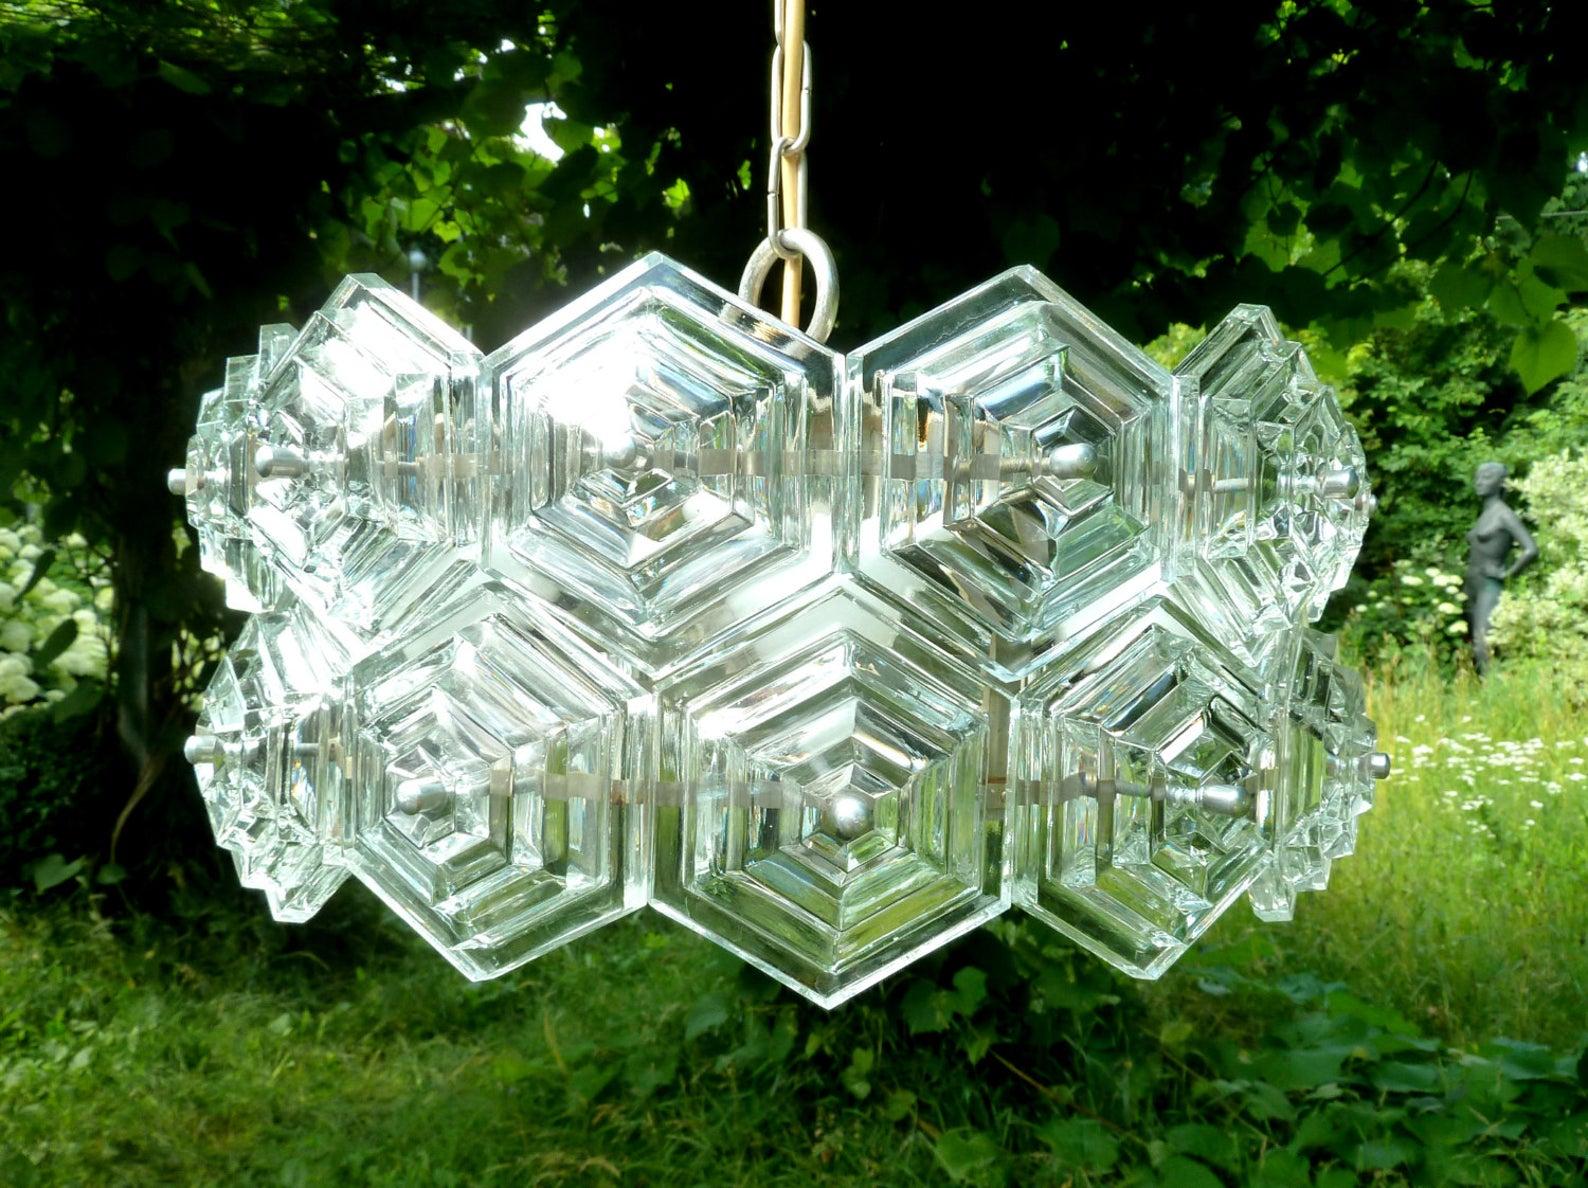 1 of 16 German clear crystal glass drum chandeliers
6-light (E27) German crystal glass ballroom chandelier, 1960s

Measures: Diameter 15.75